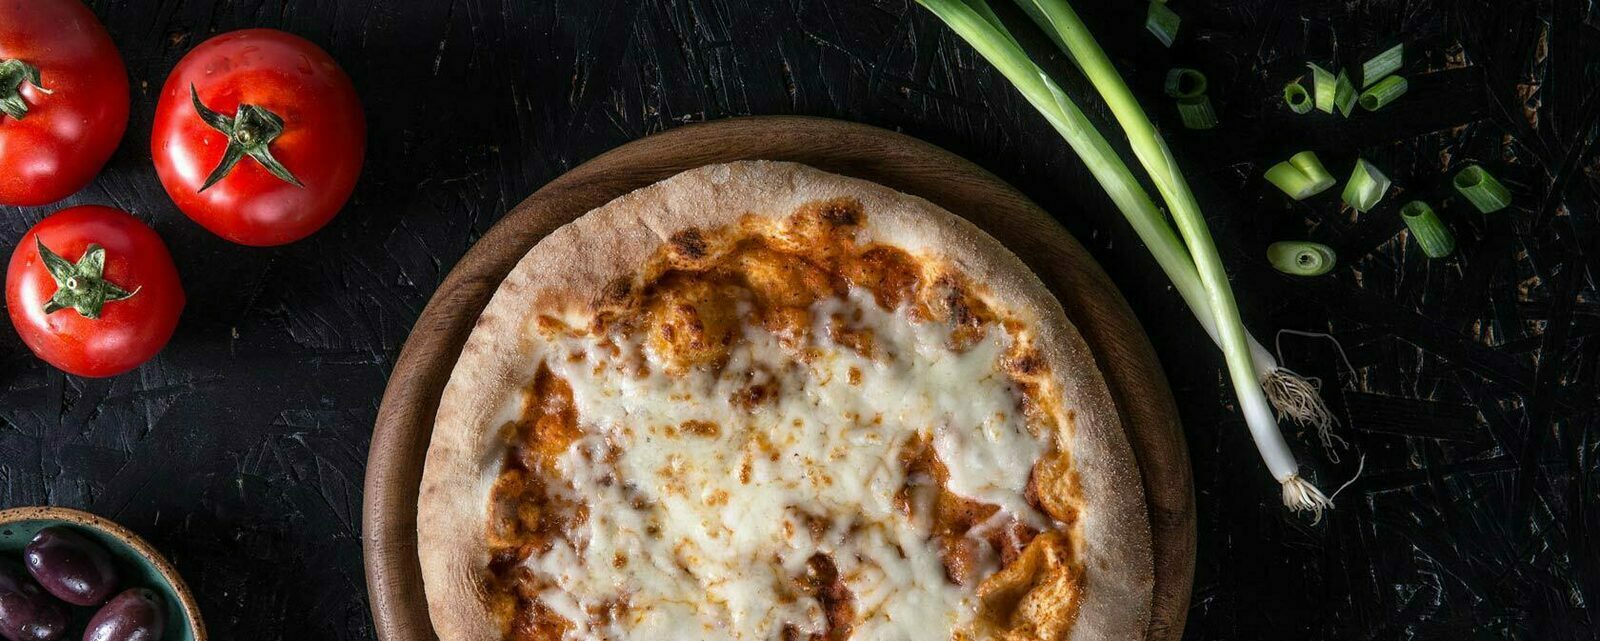 Donna Italia : une authentique pizza cuite sur pierre en seulement trois minutes.